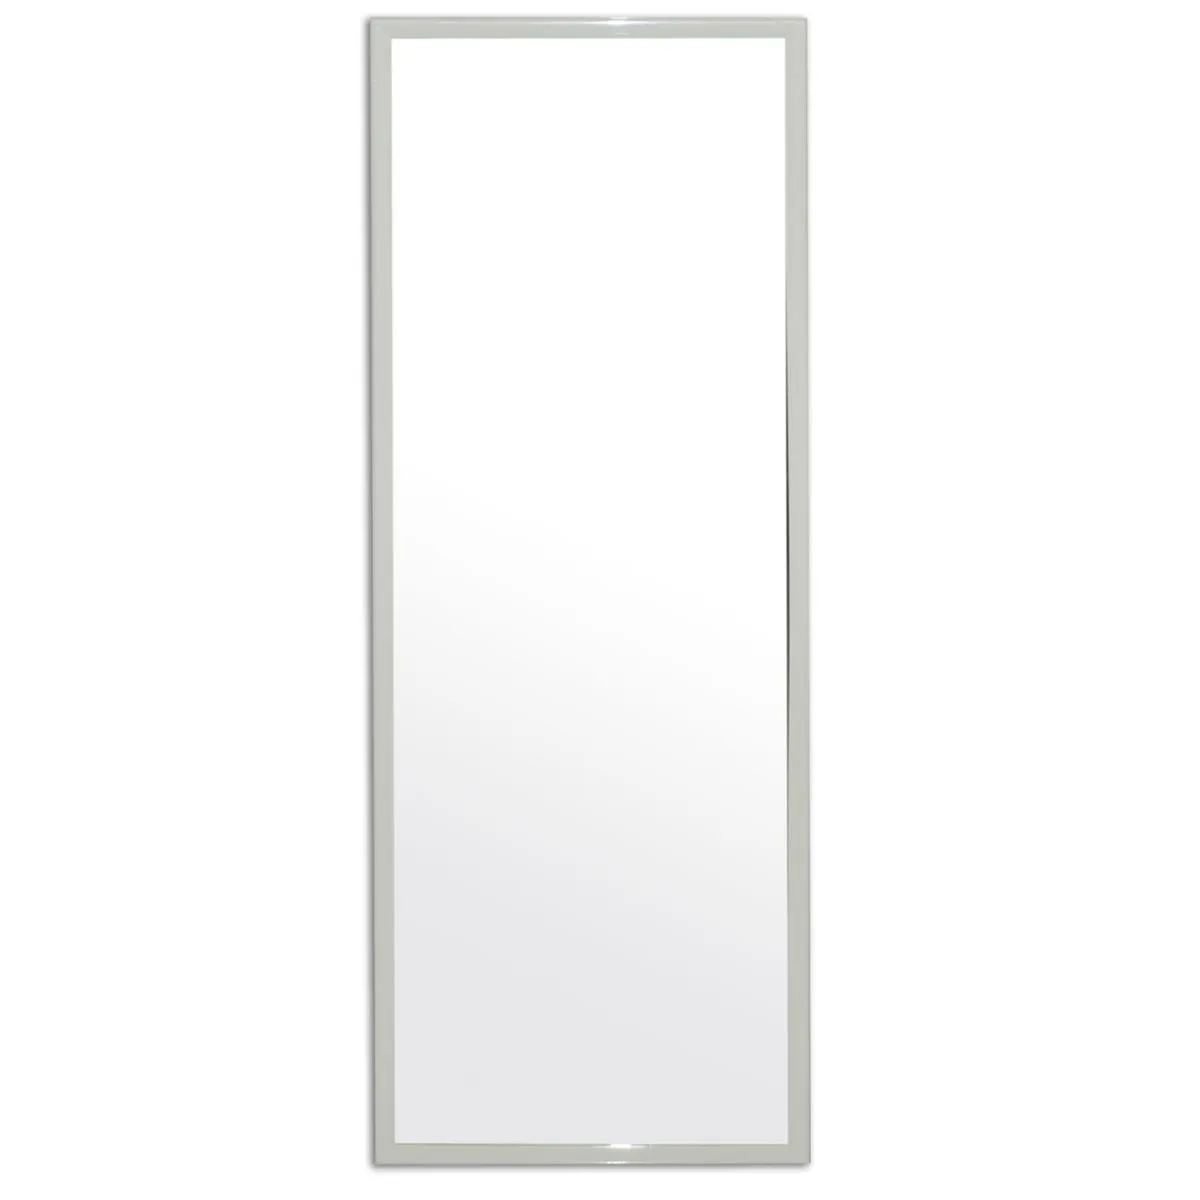 Espelho Emoldurado Retangular 90x30cm Carrefour Ho55216